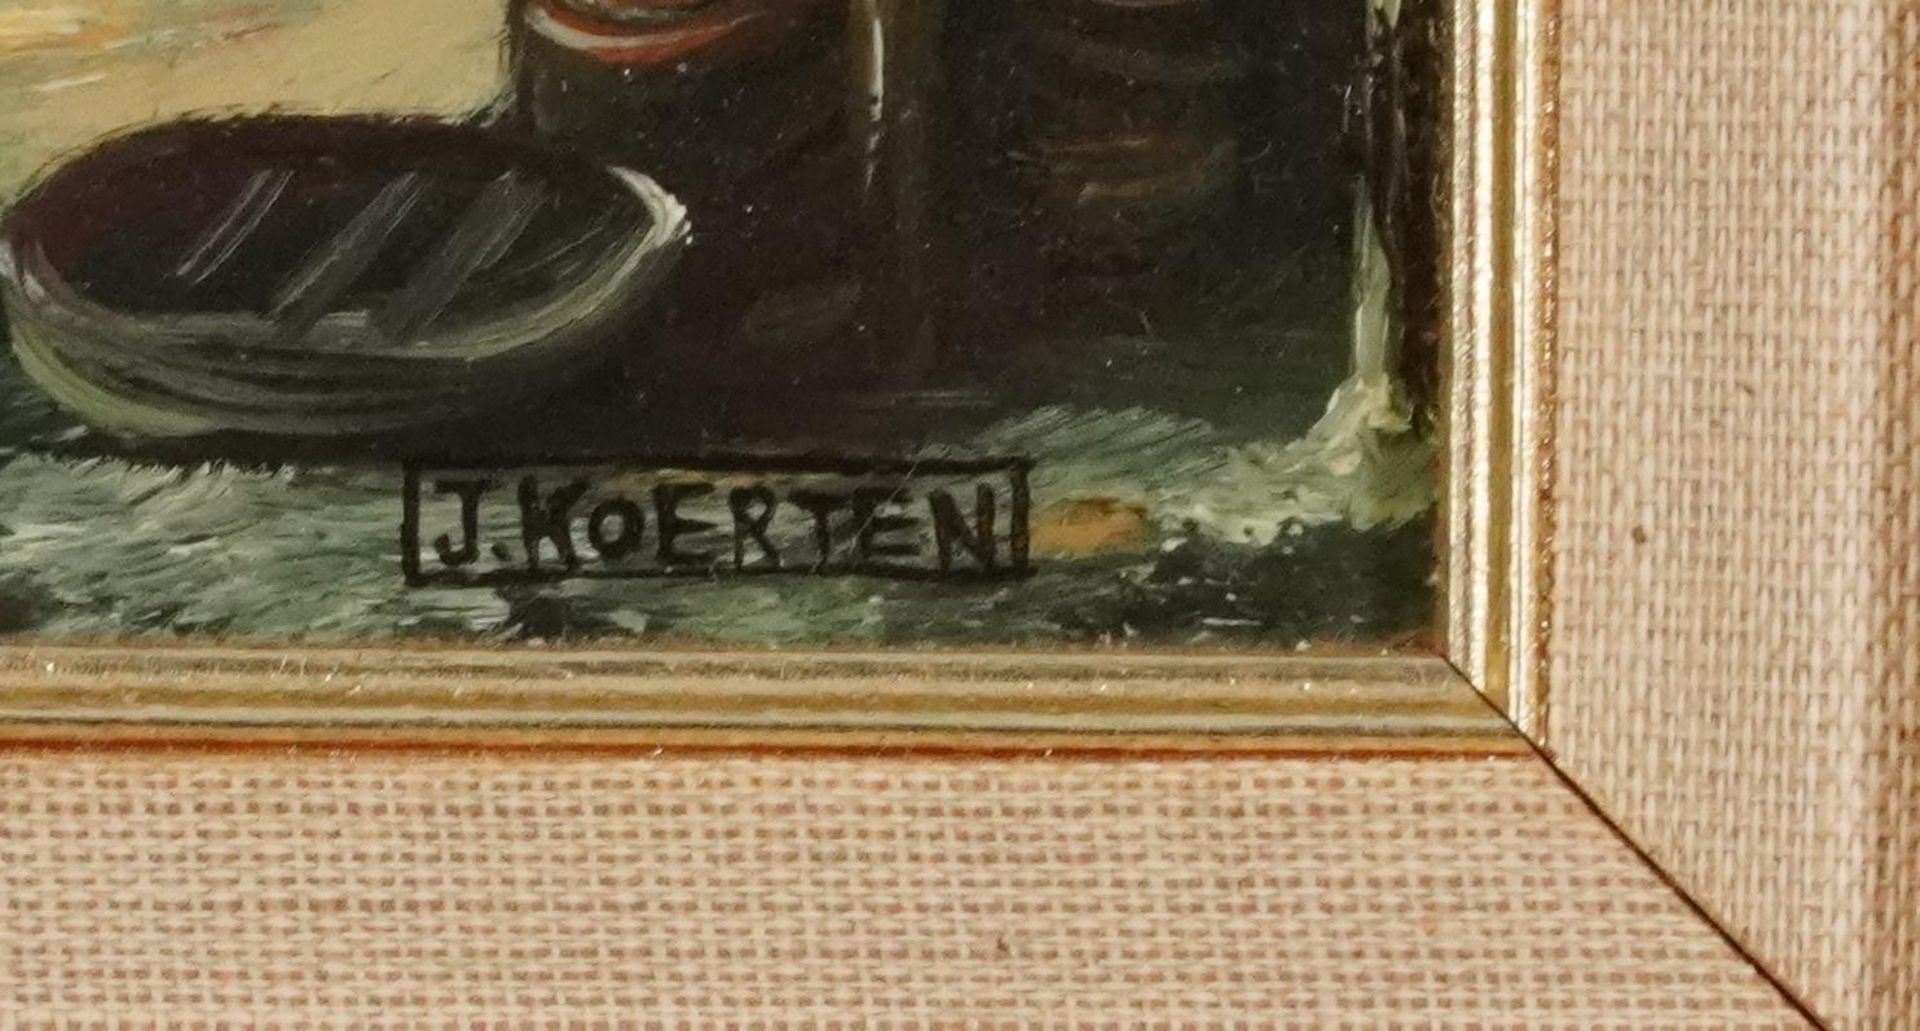 J Coerten - Winter street scene, Old Master style oil on wood panel, mounted and framed, 29cm x 23cm - Bild 3 aus 6